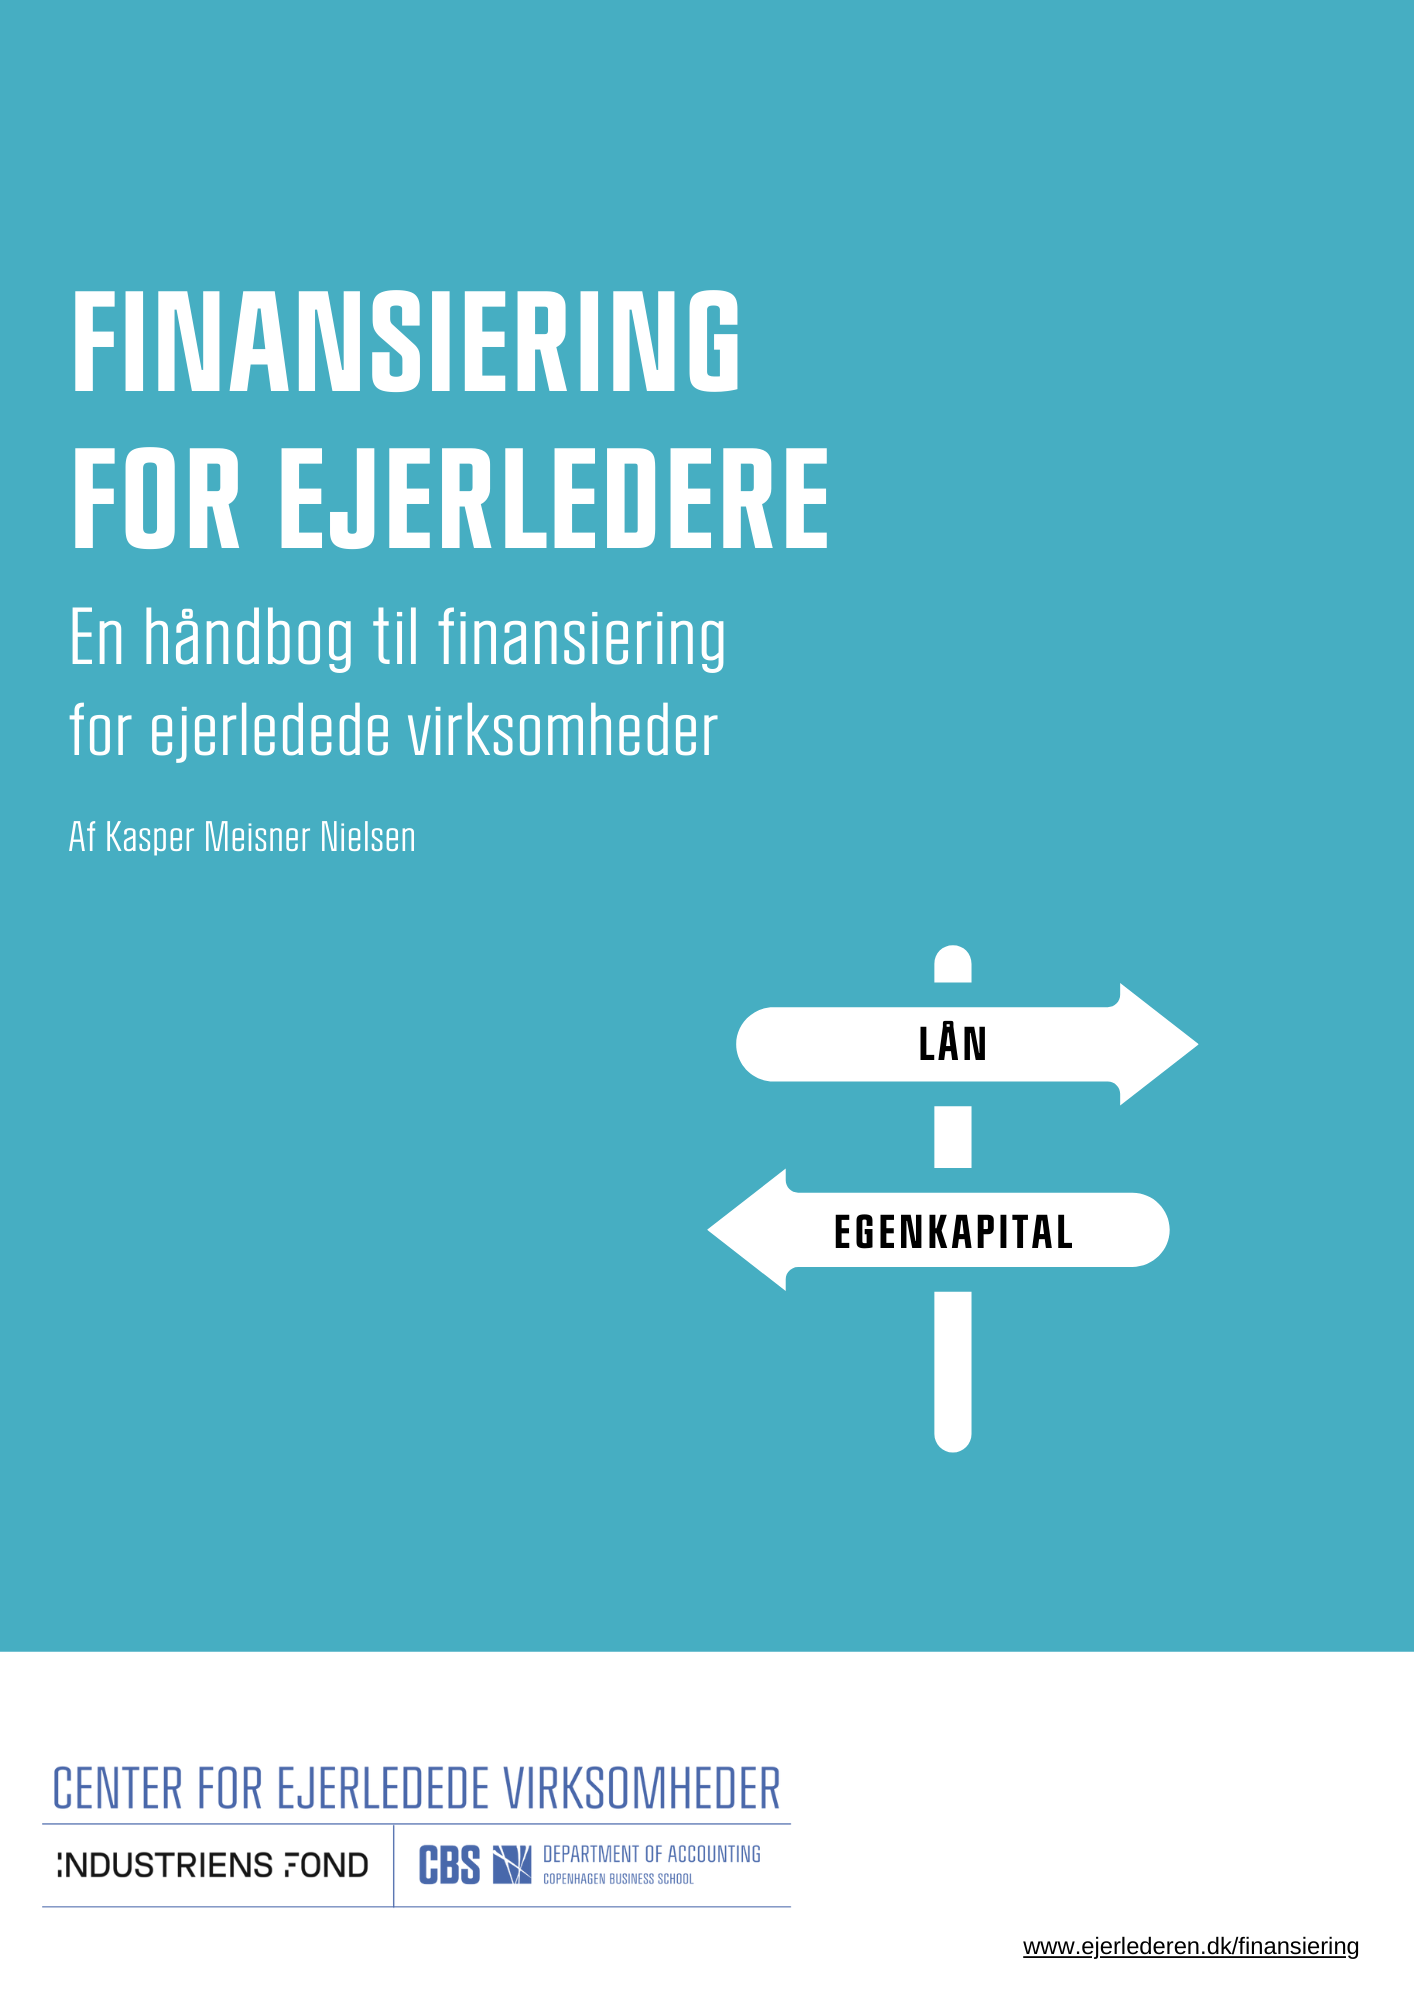 Billede af forsiden til rapporten: Finansiering for ejerledere